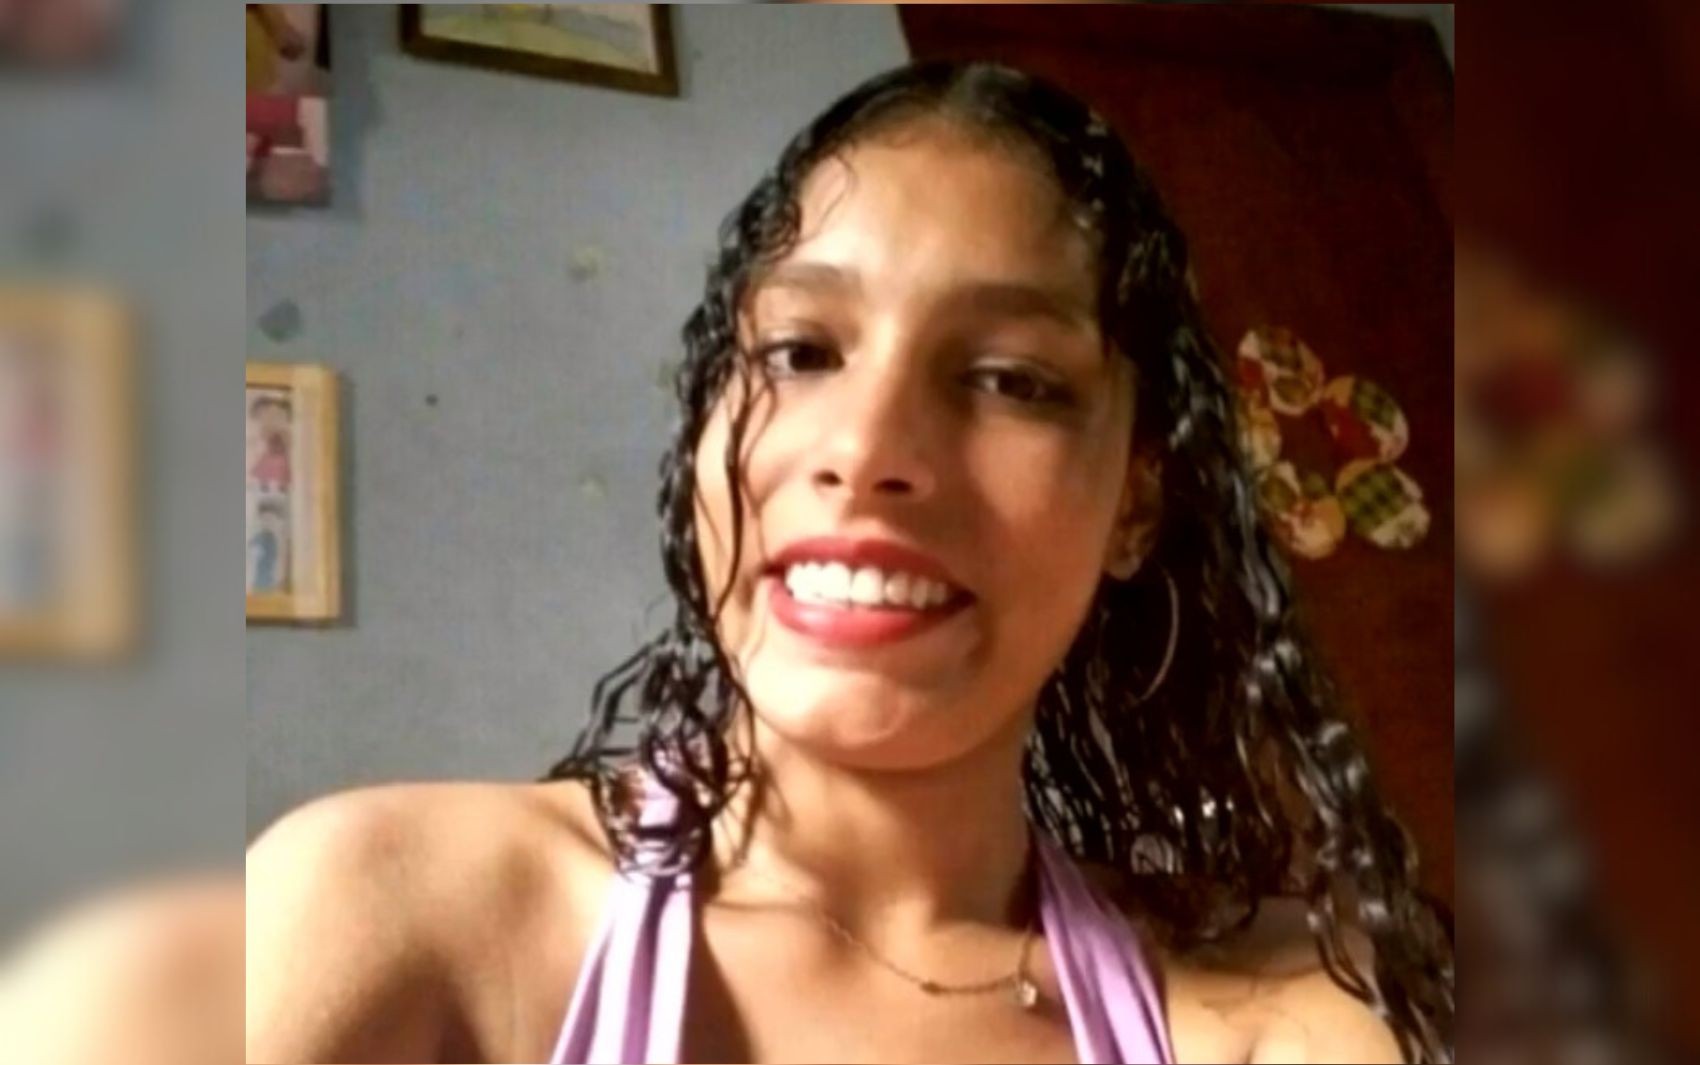 Jovem encontrada morta com corte no pescoço em rio de Goiás tinha 18 anos e foi identificada pelas digitais